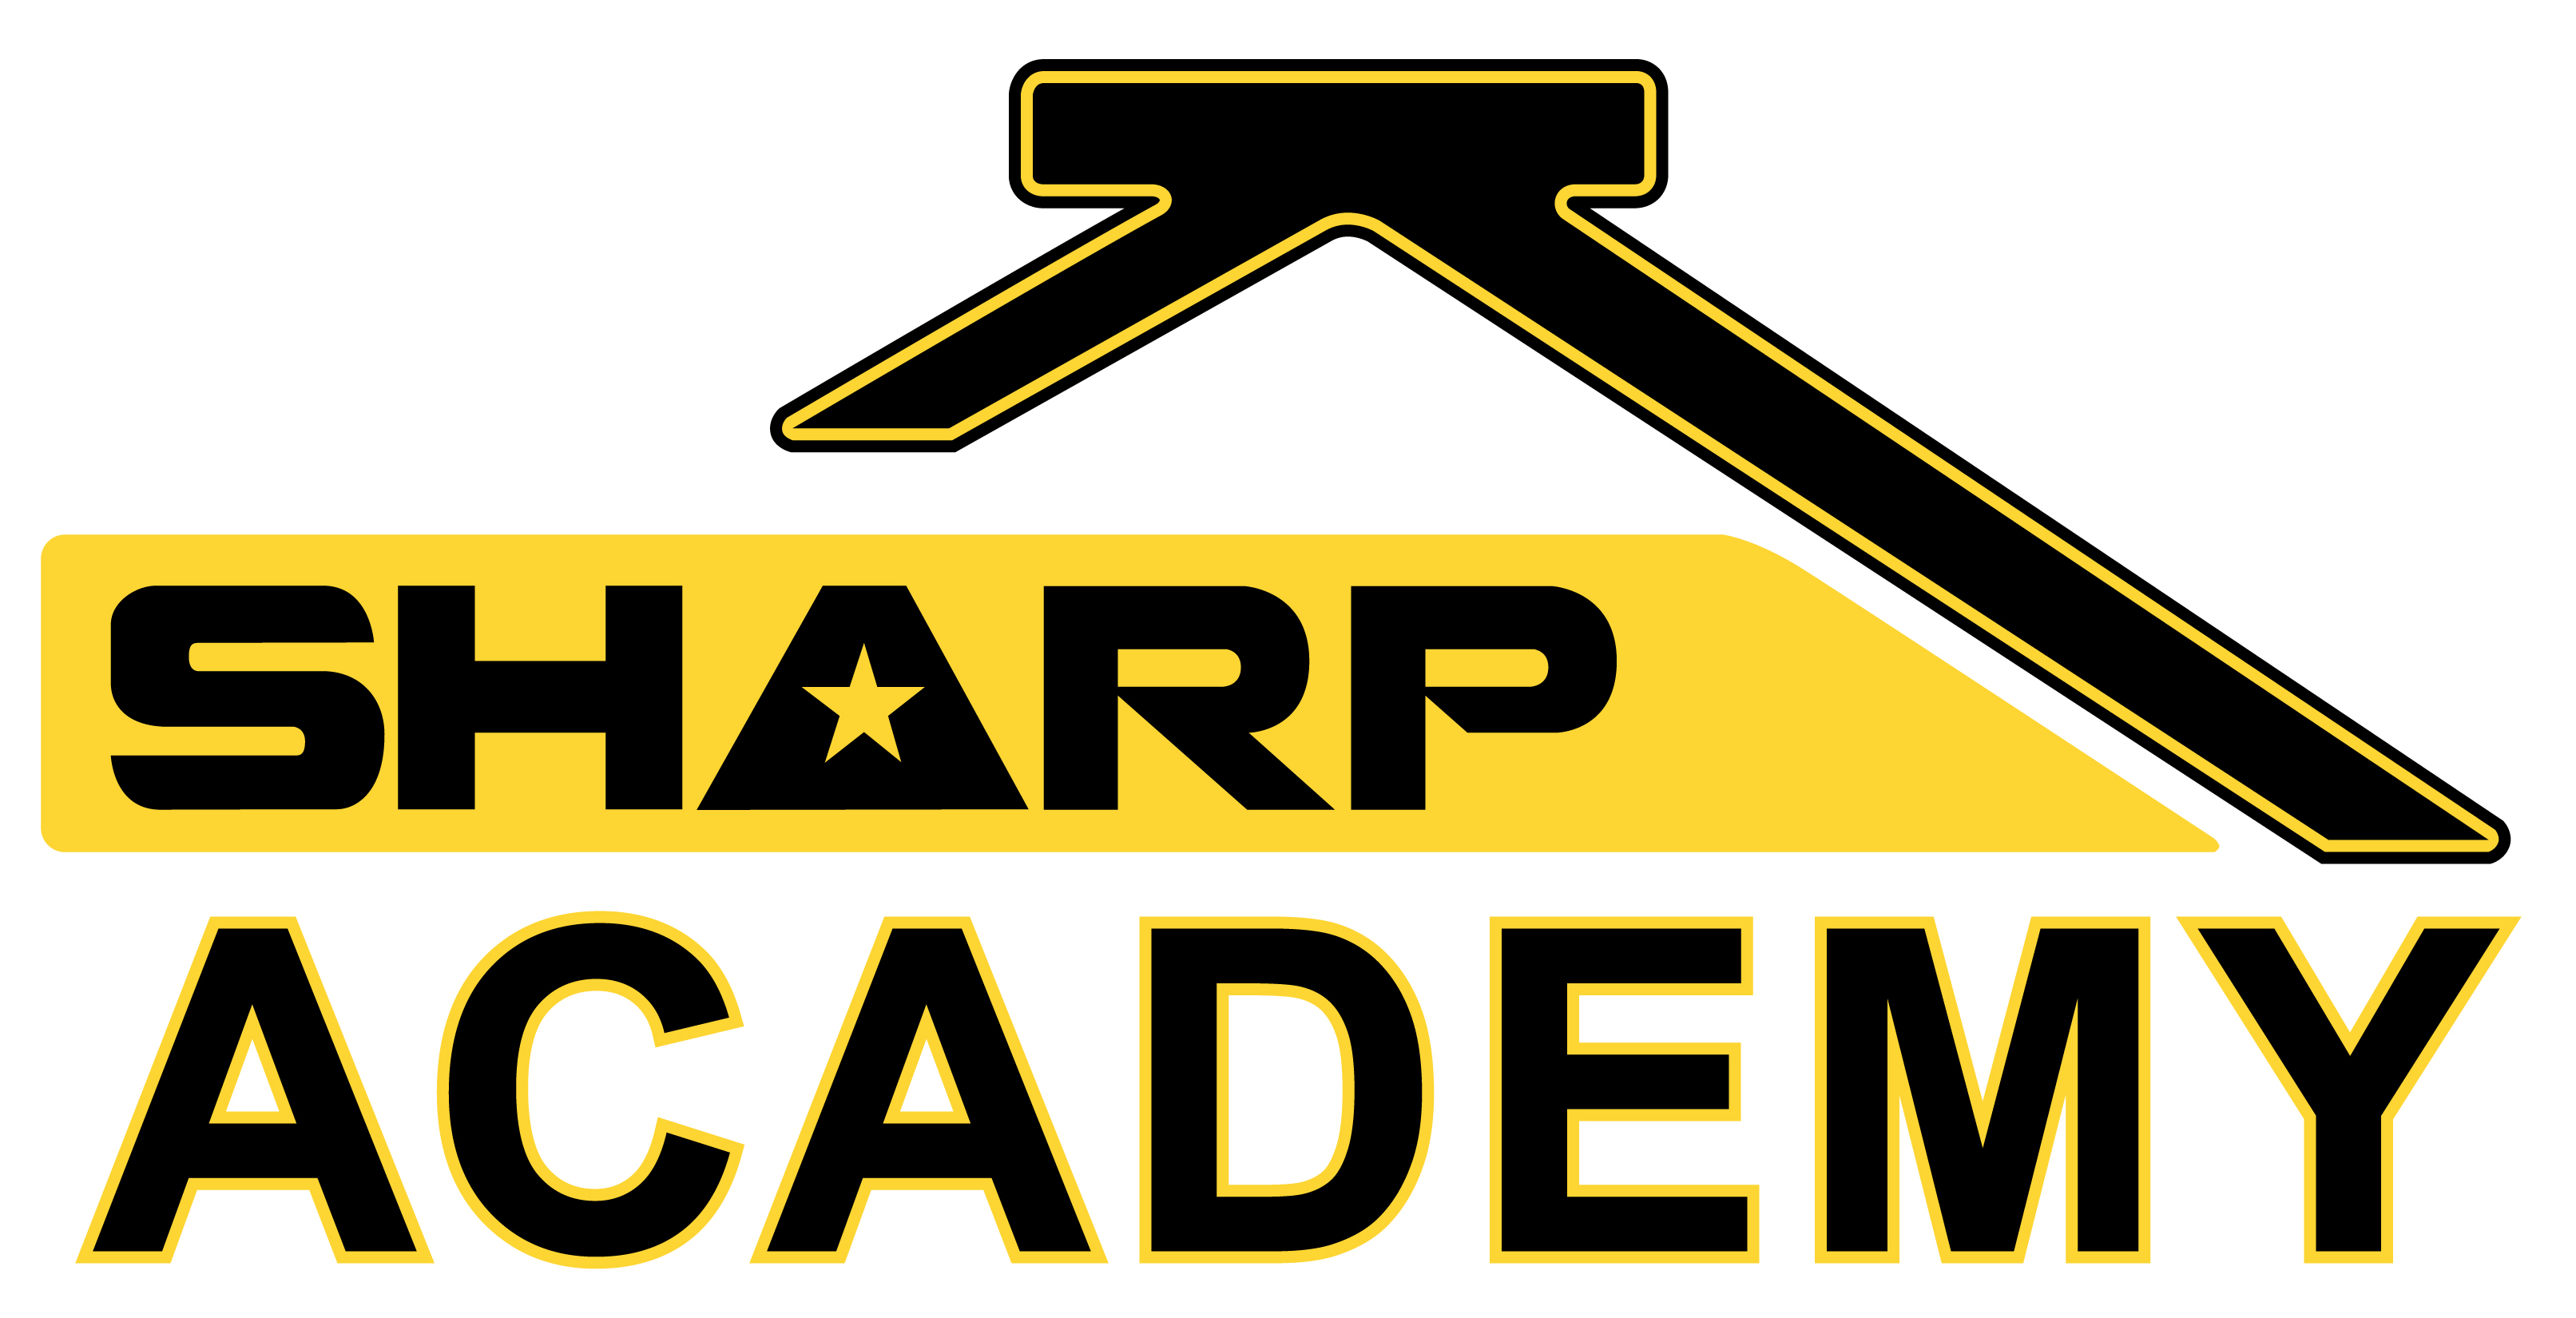 U.S. Army SHARP Academy